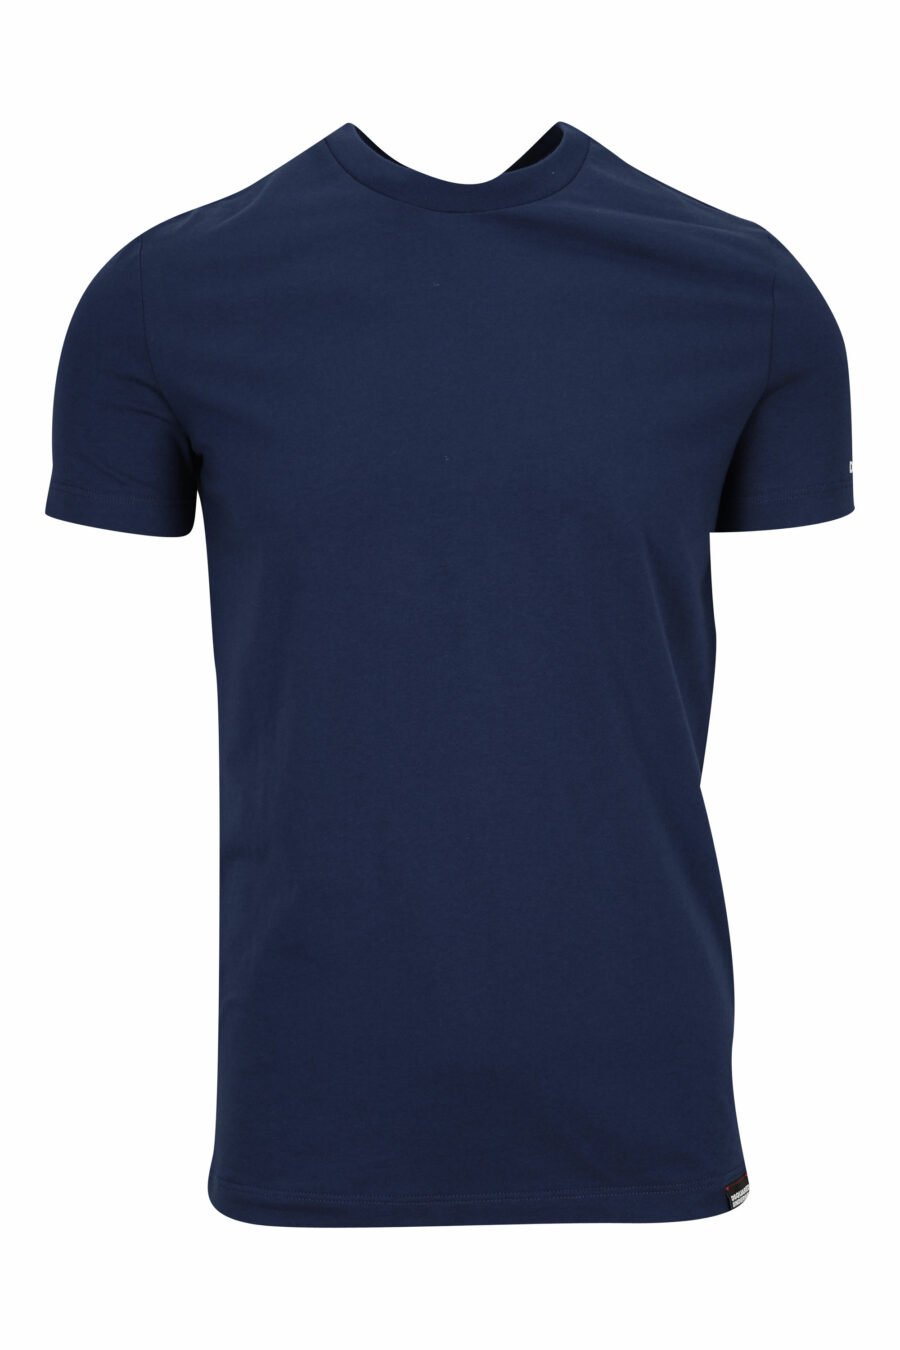 T-shirt bleu foncé avec sous-vêtements blancs minilogue - 8032674811684